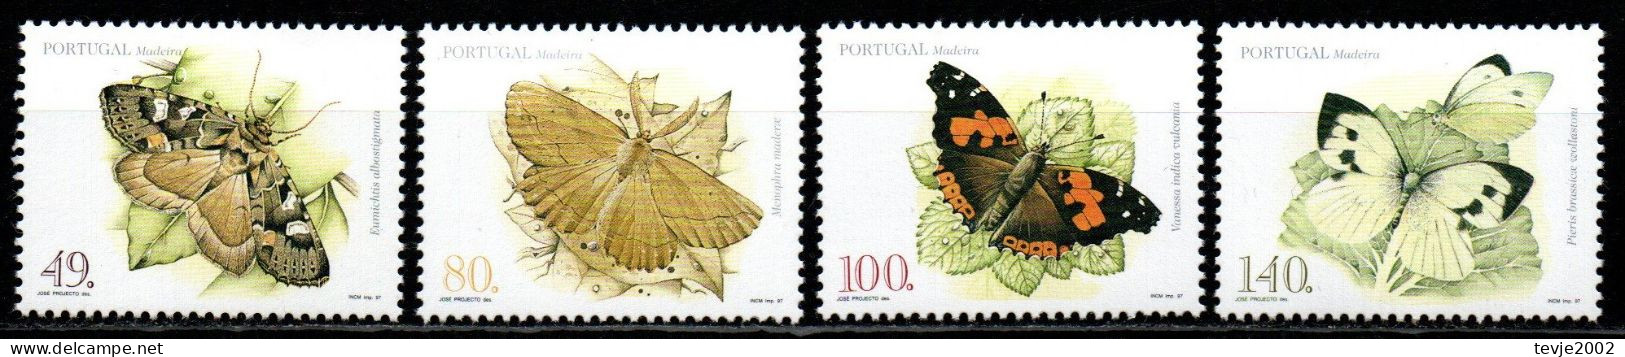 Portugal Madeira 1997 - Mi.Nr. 187 - 190 A - Postfrisch MNH - Tiere Animals Schmetterlinge Butterflies - Mariposas